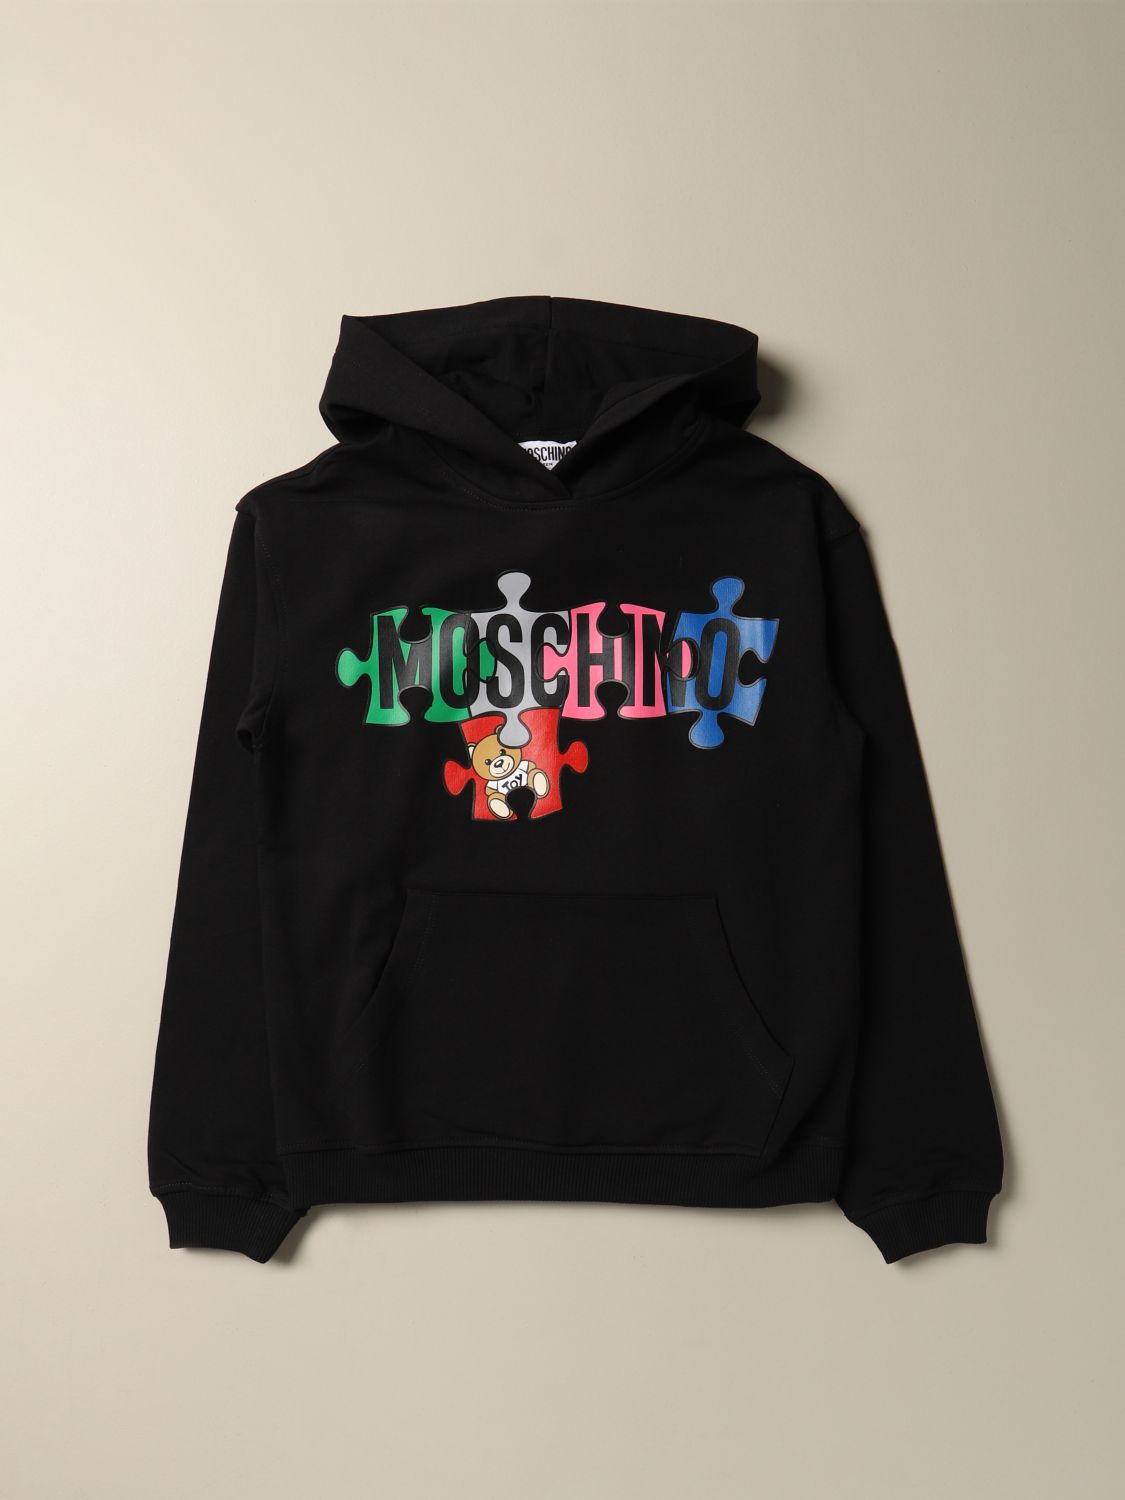 moschino kids hoodie